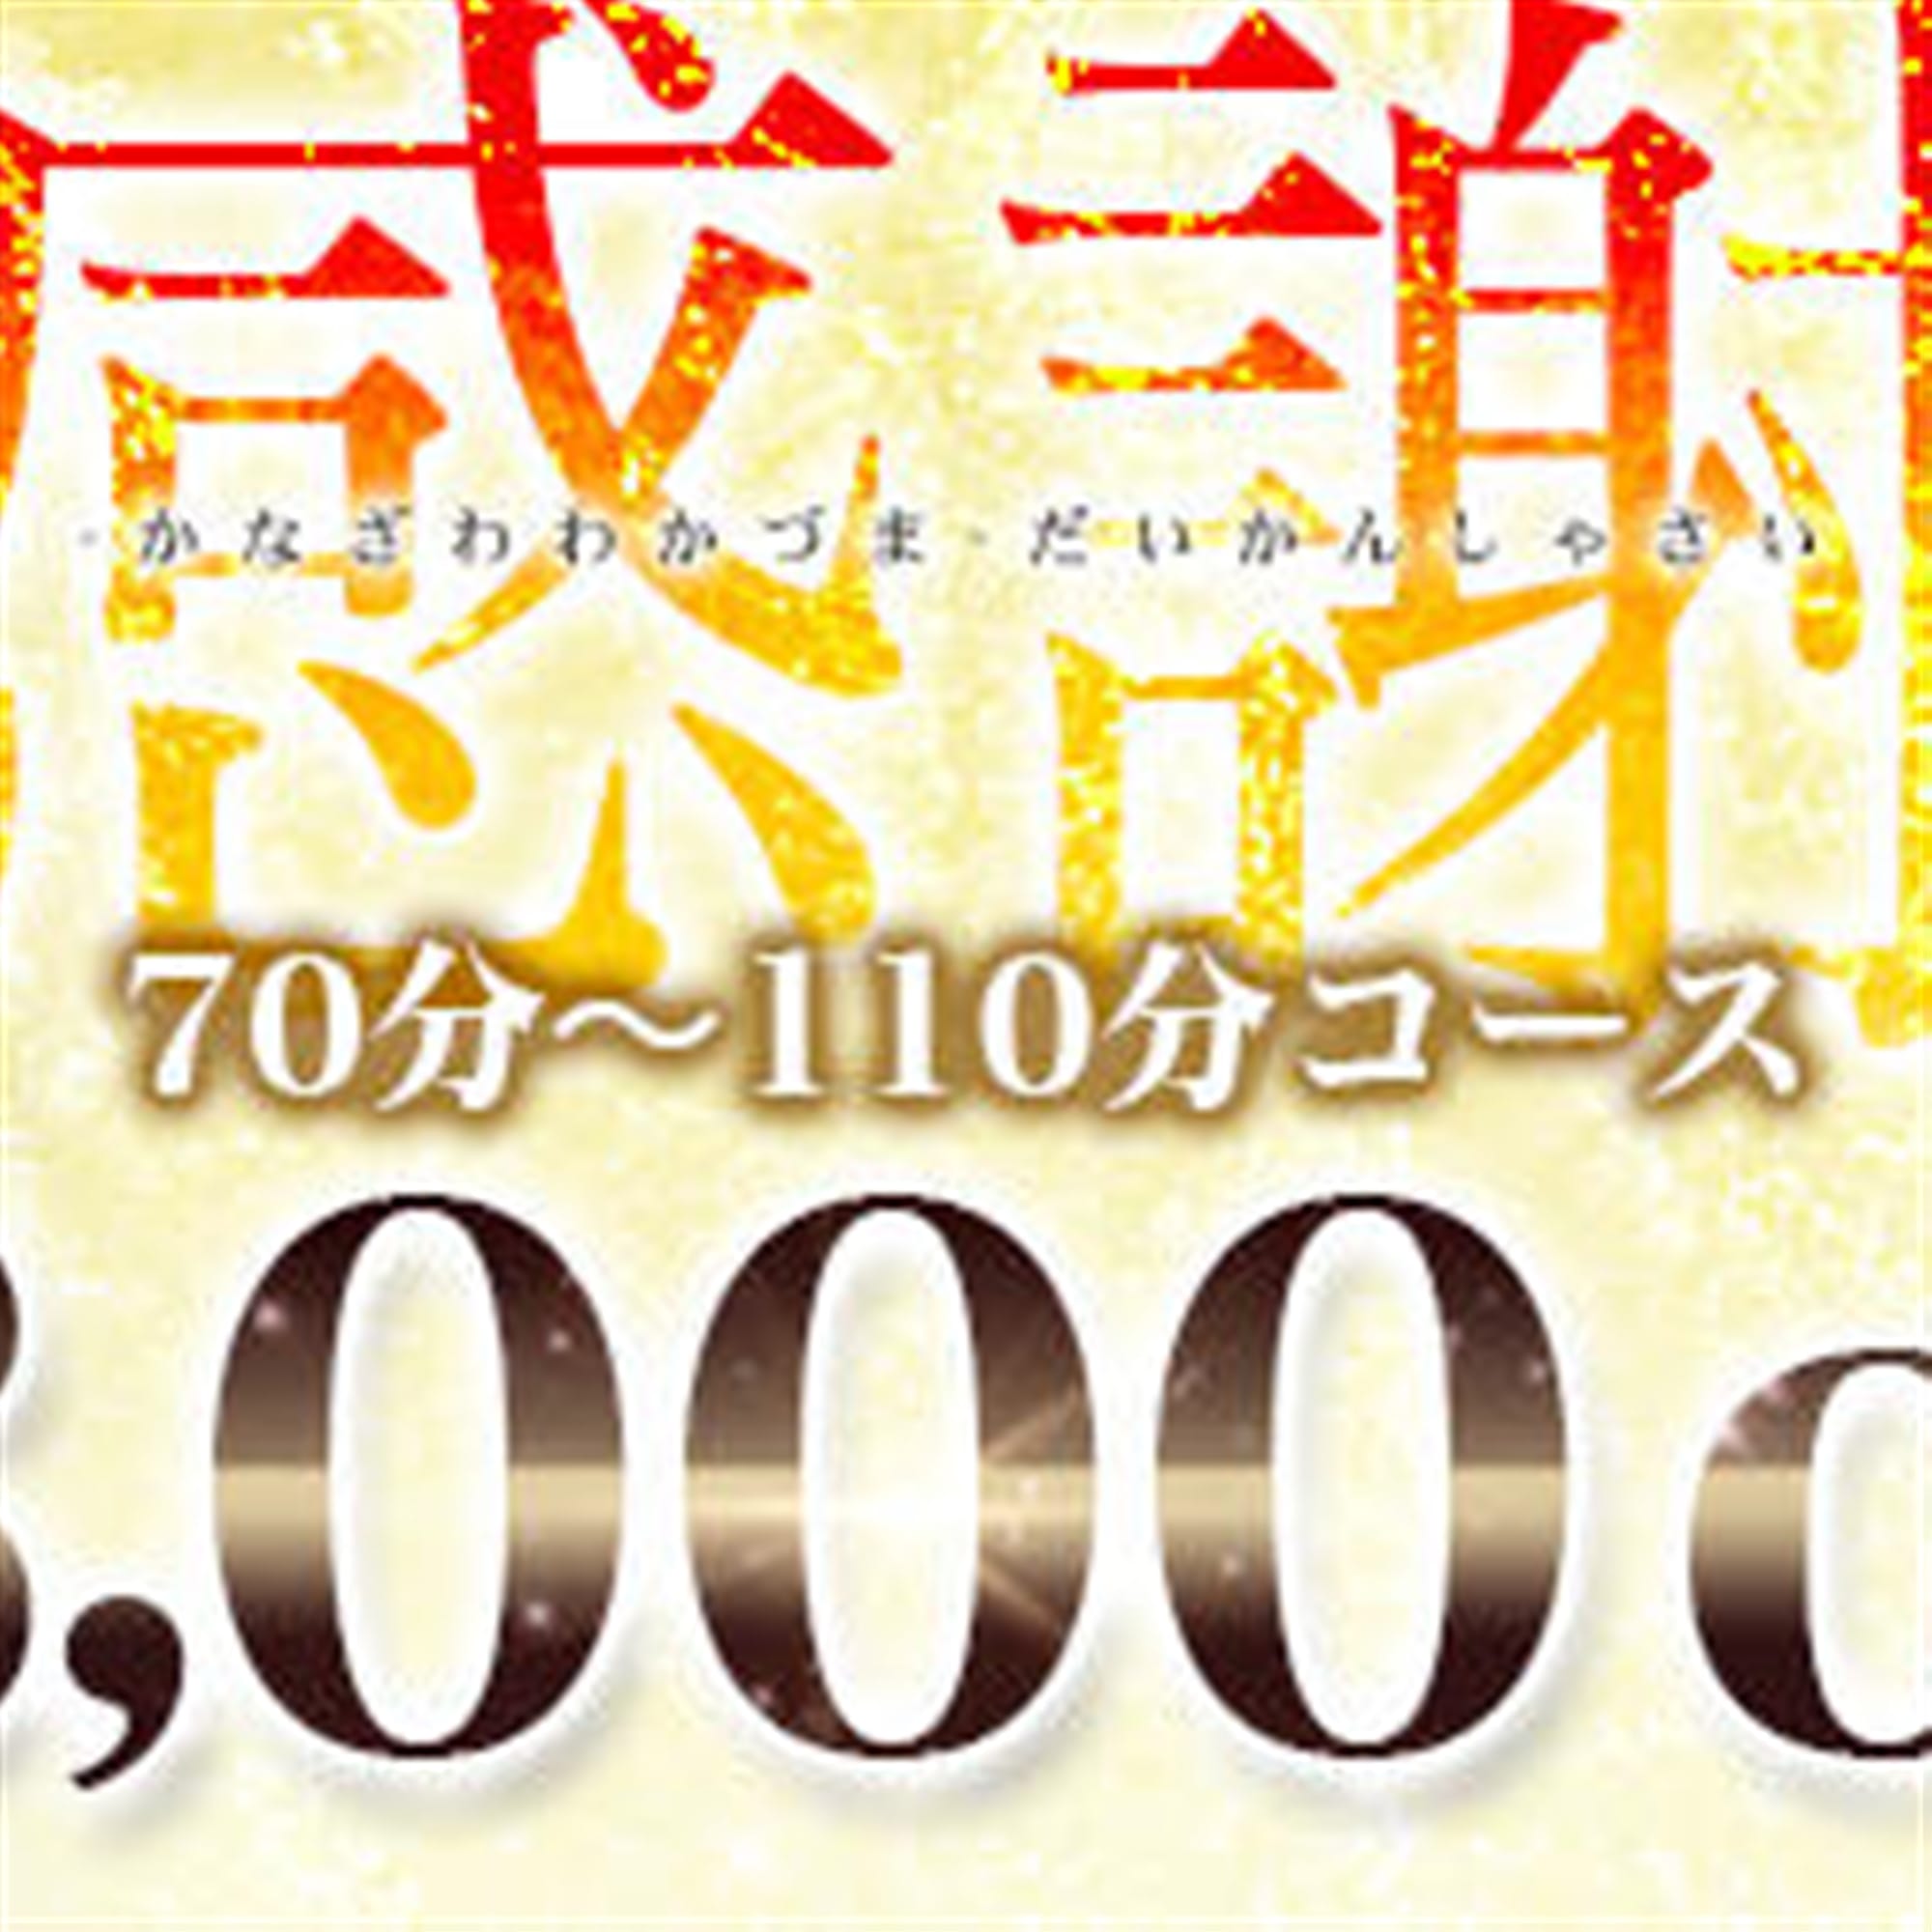 「3,000円OFFのSpecial Event+パネル指名無料」04/26(金) 19:50 | 金沢若妻のお得なニュース